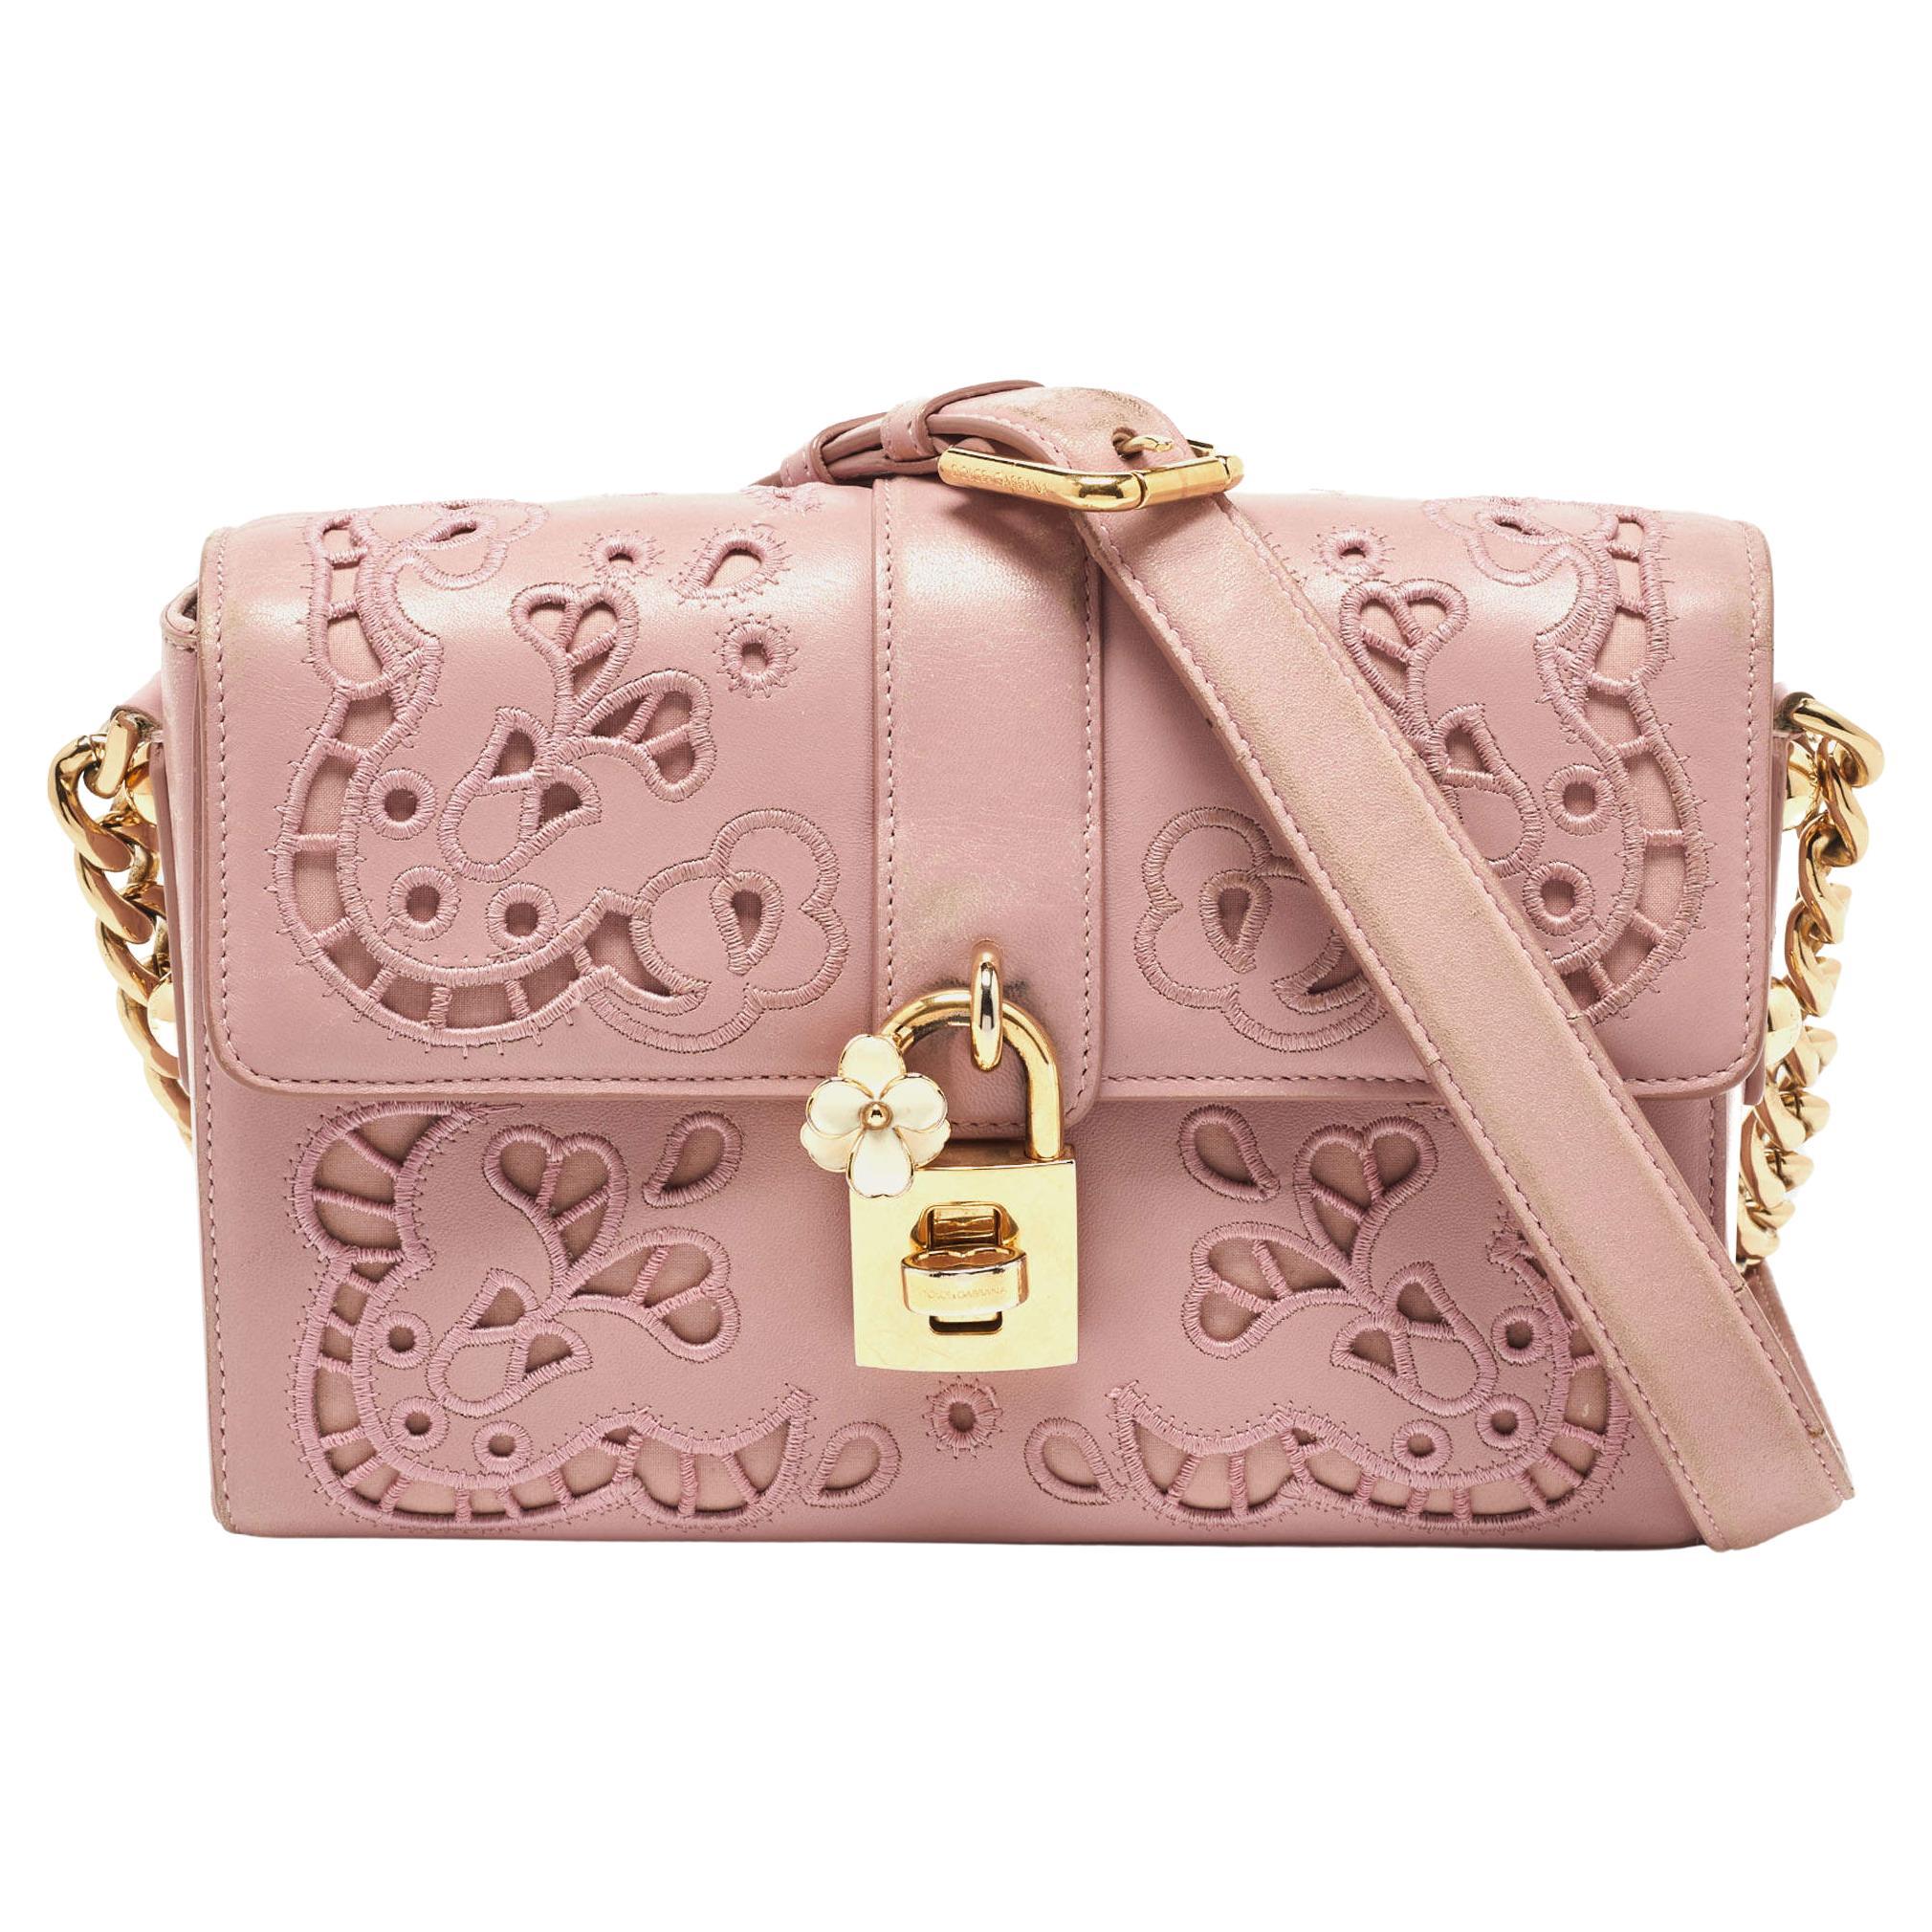 Dolce & Gabbana Pink Leather Embroidered Dolce Shoulder Bag For Sale